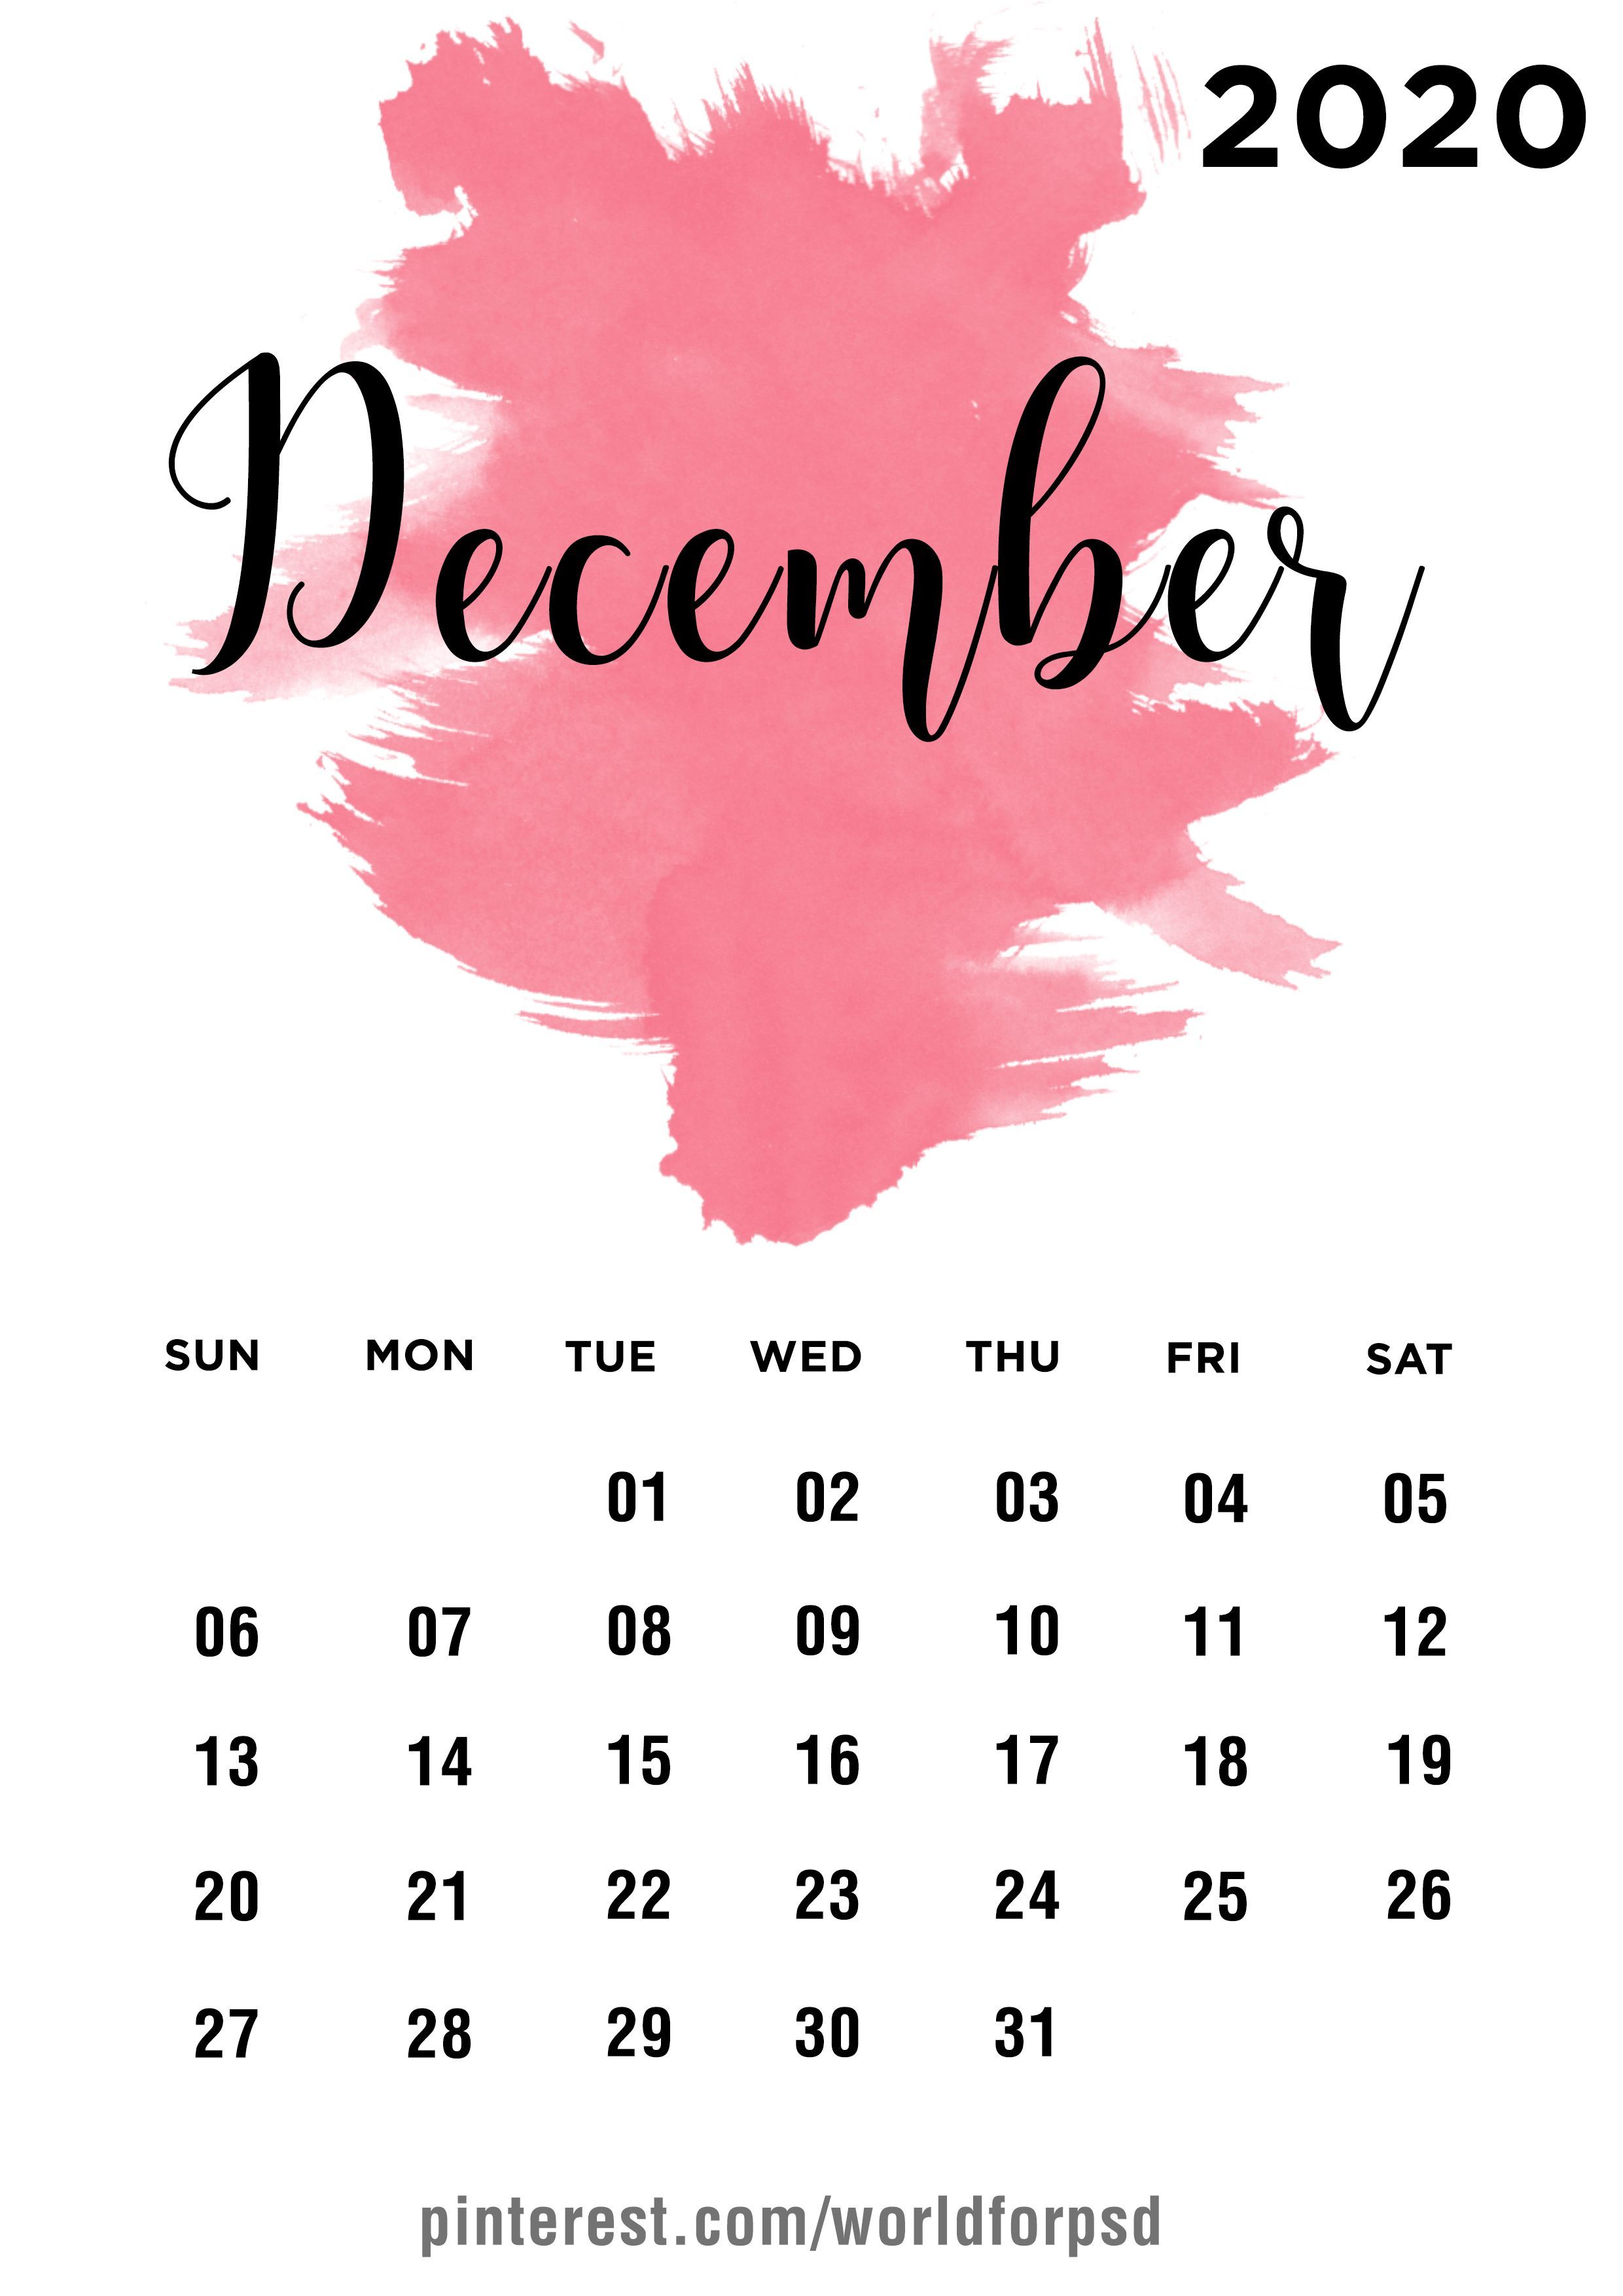 December 2020 Calendar. Calendar wallpaper, Calendar design, Beautiful calendar design